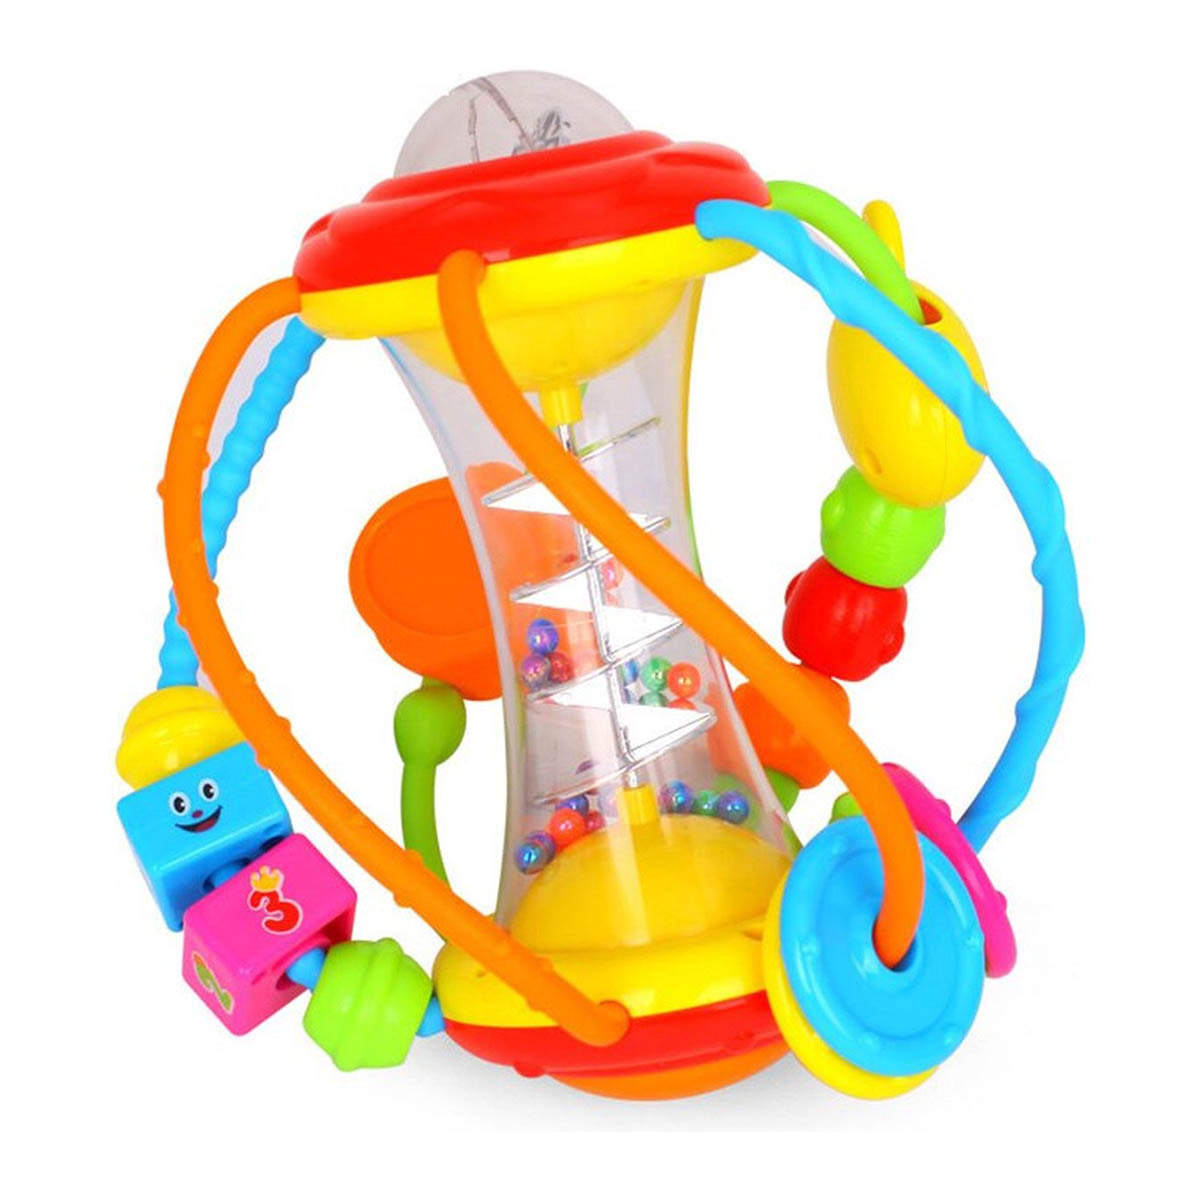 Ariko XL Baby Rammelaar - Ontwikkelingsspeelgoed - Multifunctioneel - Kleurrijk - Educatief